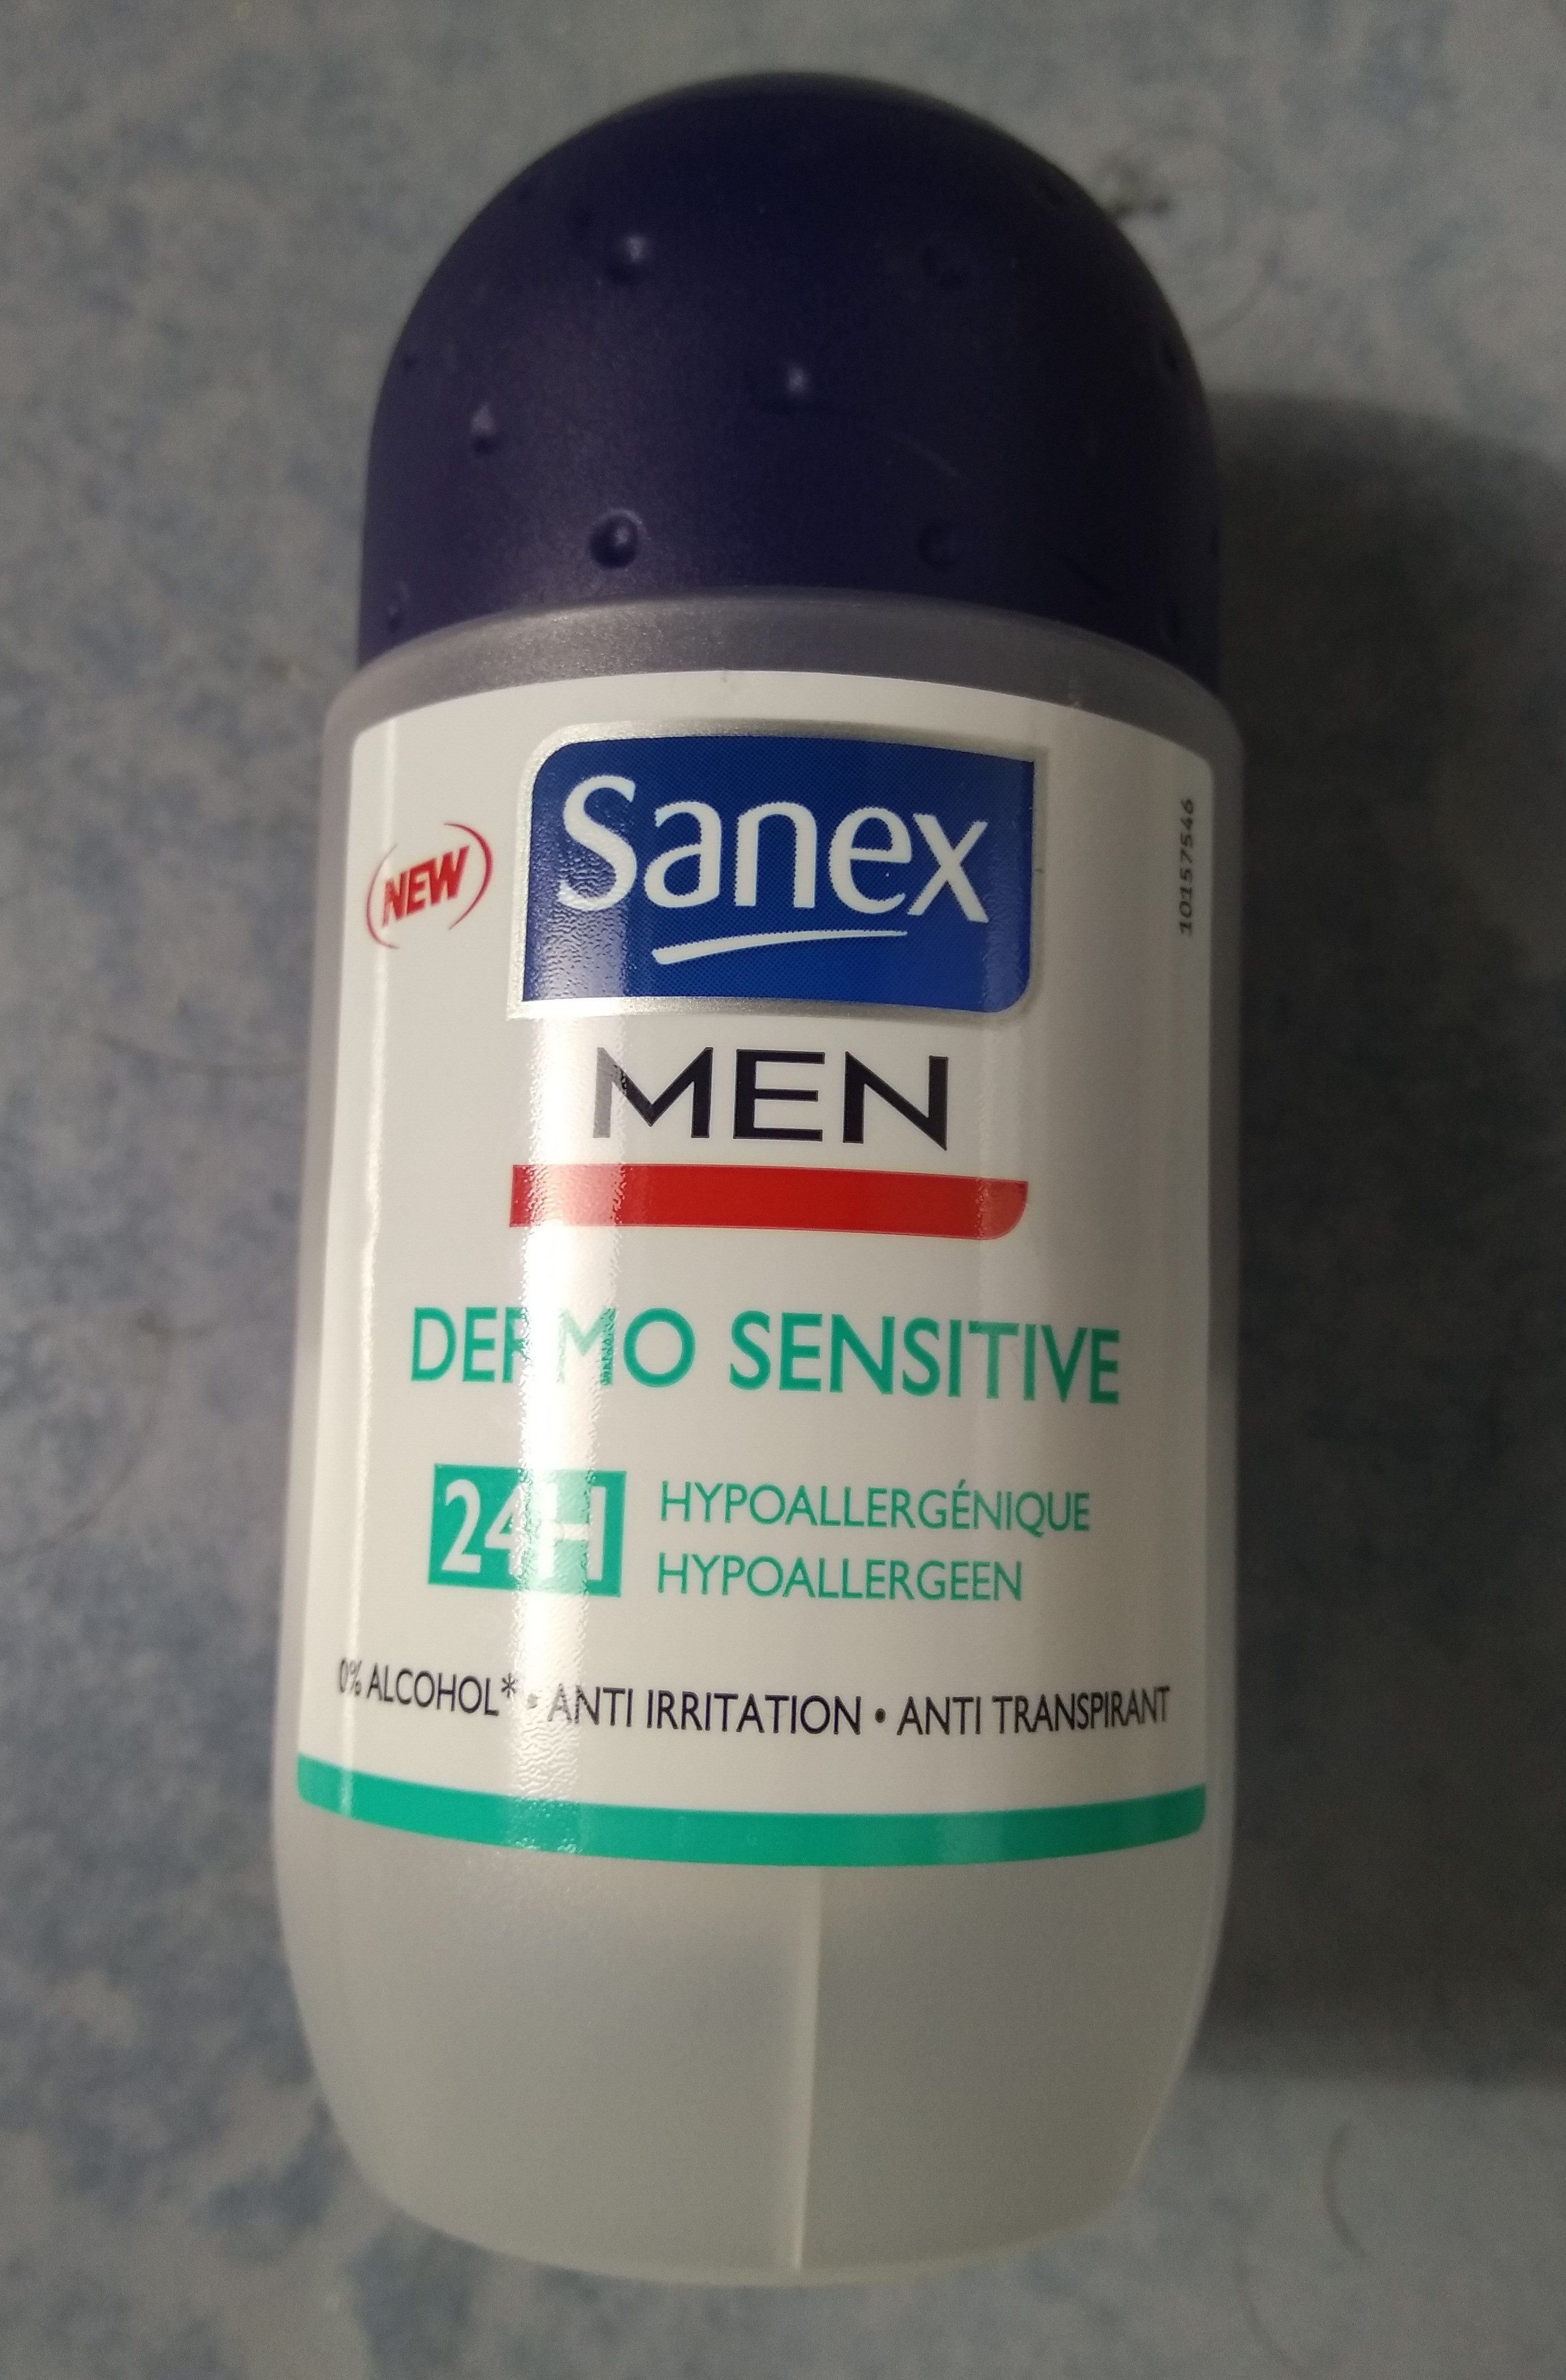 Sanex Men Dermo Sensitive - Product - fr